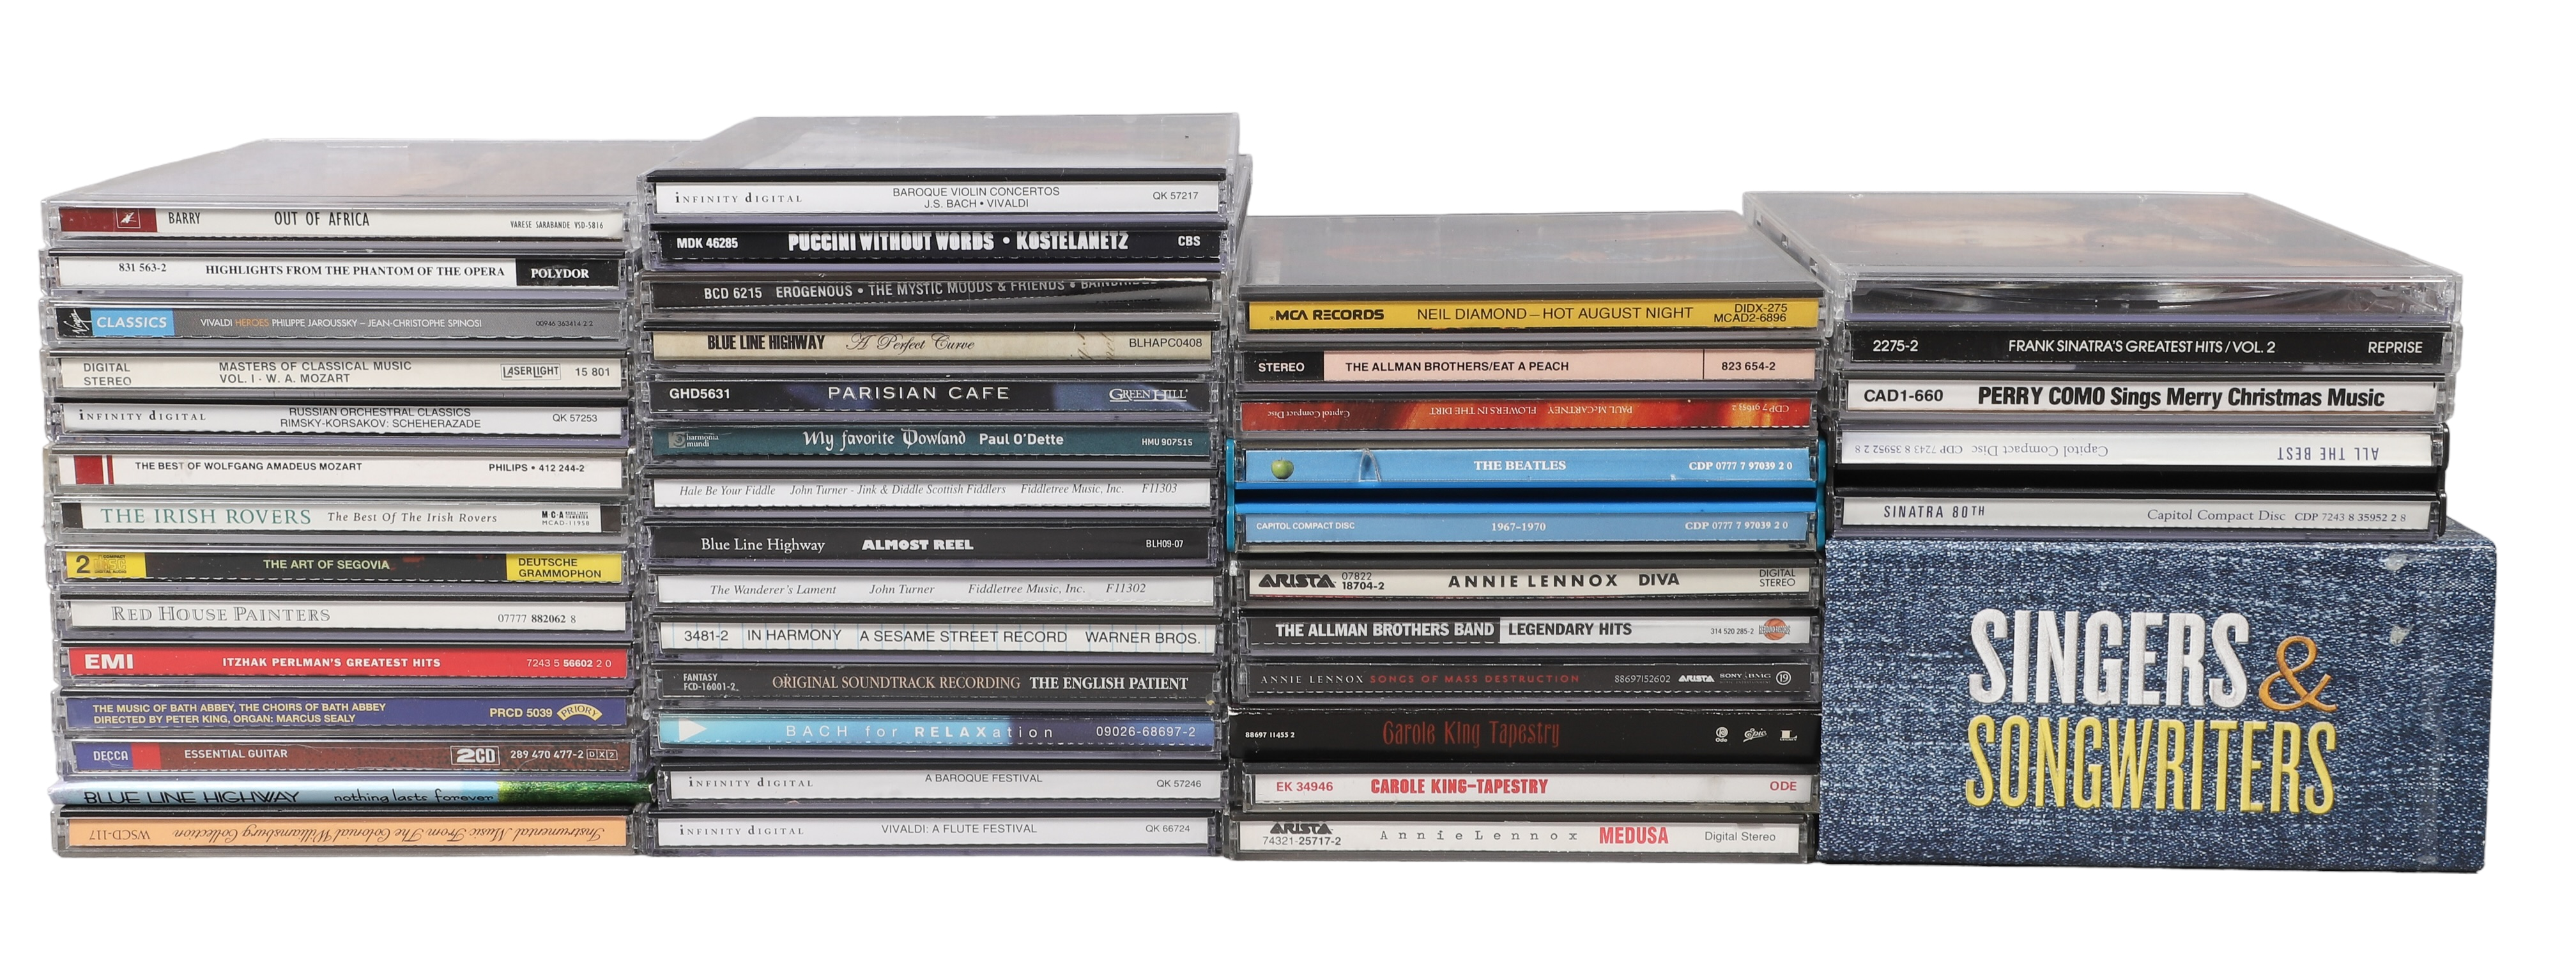  50 CDs including The Beatles  2e163e